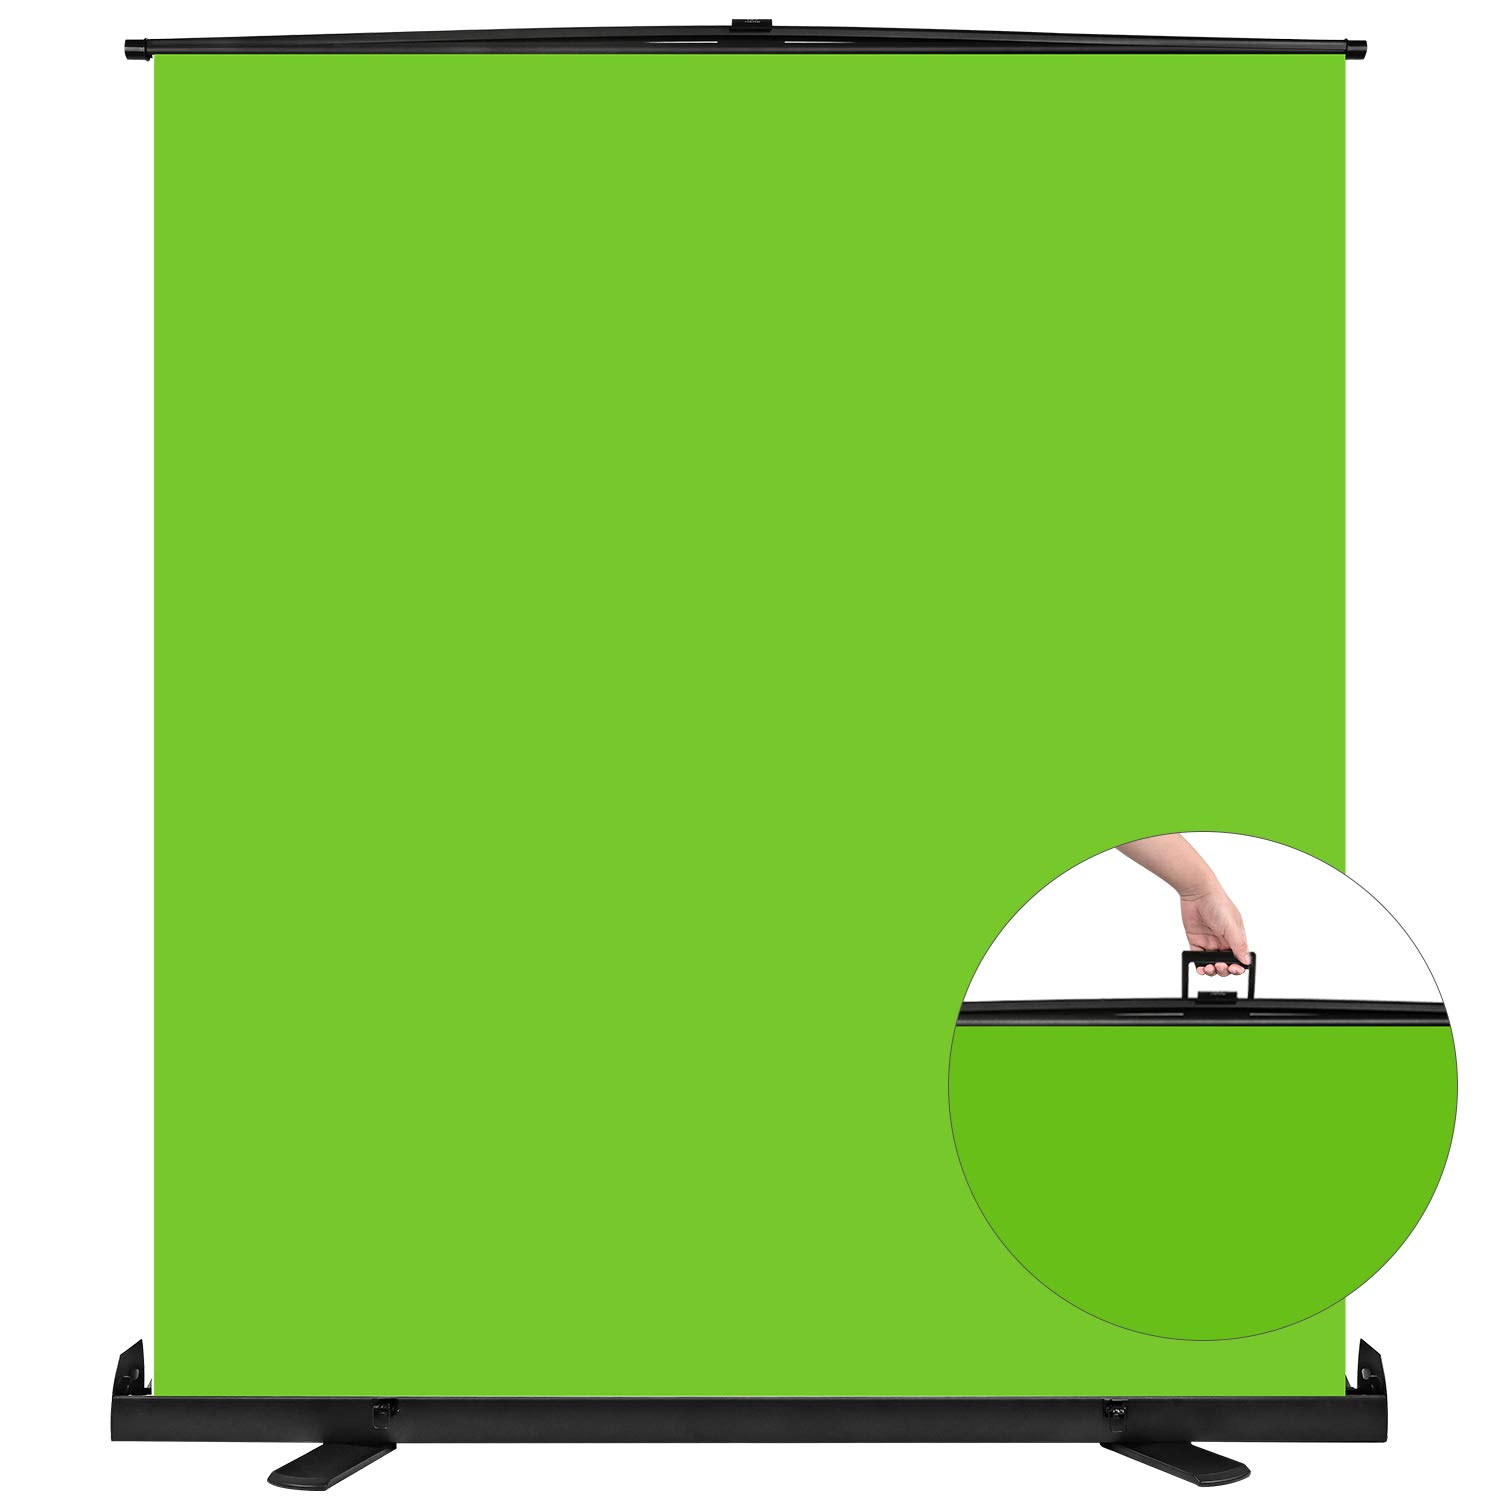 Yesker green screen là sản phẩm không thể thiếu cho các tín đồ làm video, đặc biệt là trên TikTok. Với độ bền cao, khung kim loại chắc chắn, Yesker sẽ giúp bạn tạo ra những video chất lượng cao nhất. Khám phá ngay video đang hot của Yesker để biết thêm chi tiết về sản phẩm này nhé!